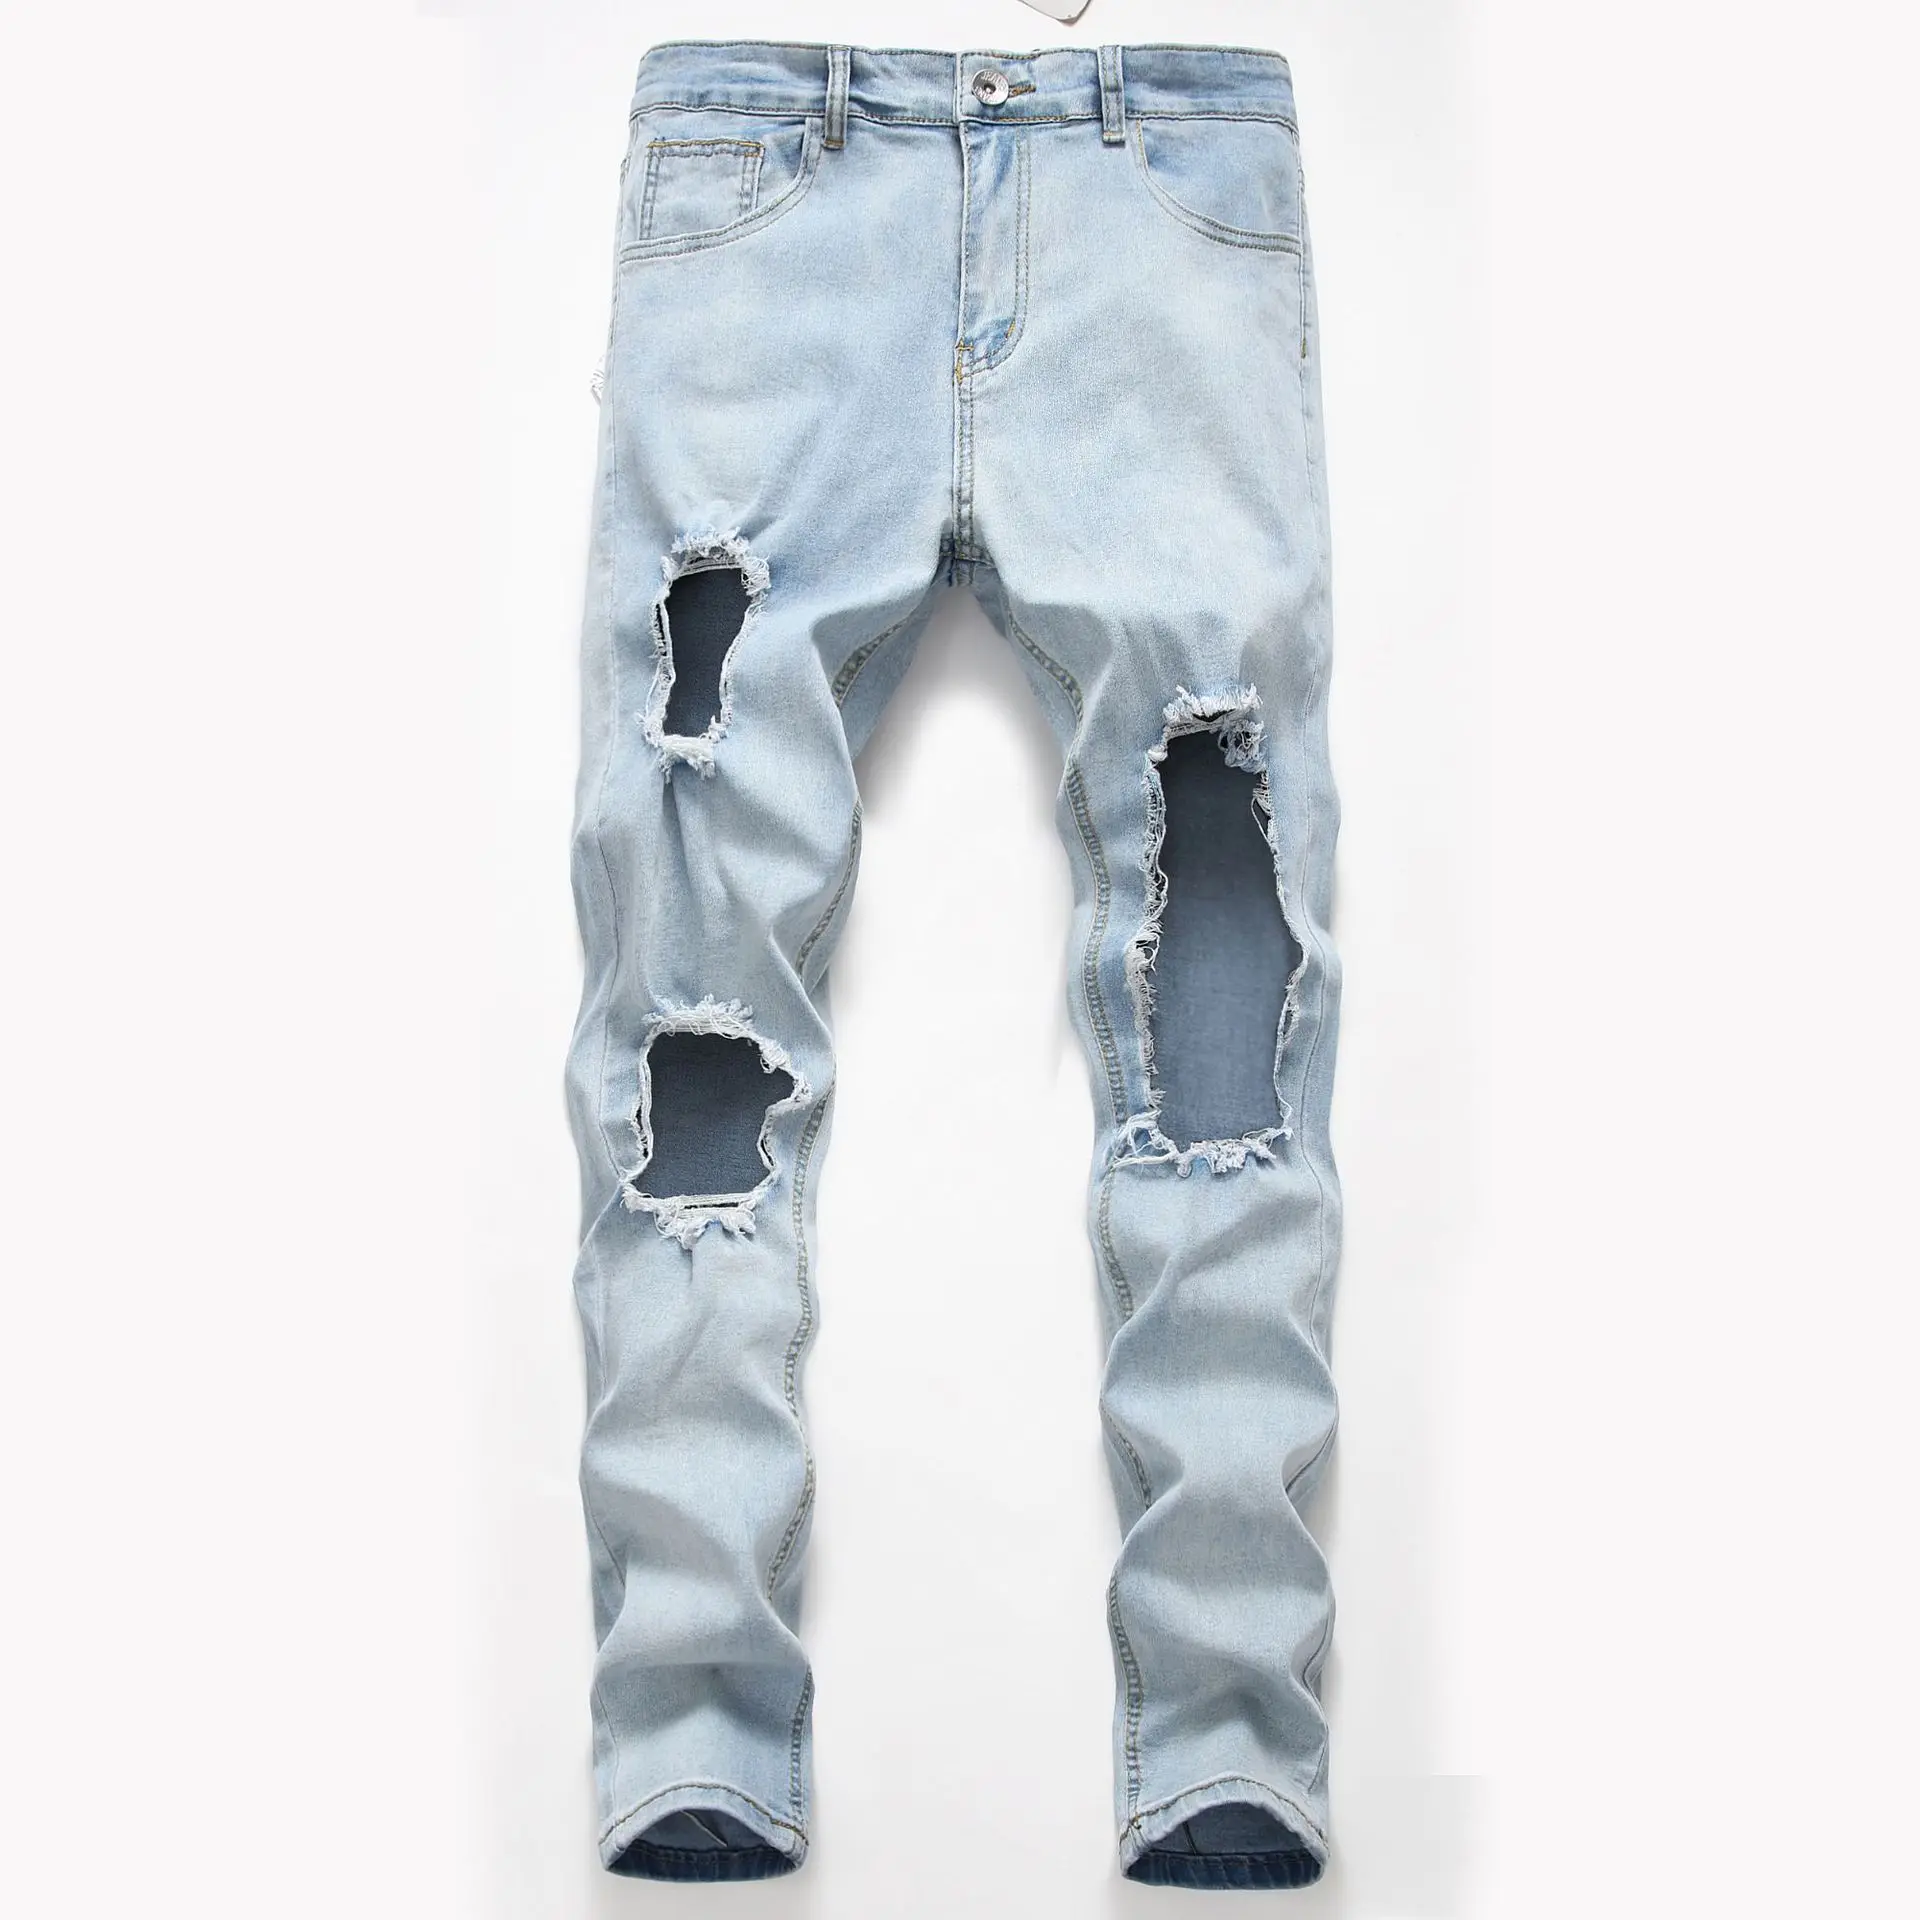 Pantalones vaqueros elásticos para hombre, Jeans ajustados con agujeros desgastados, talla S-XXXL Ropa de hombre